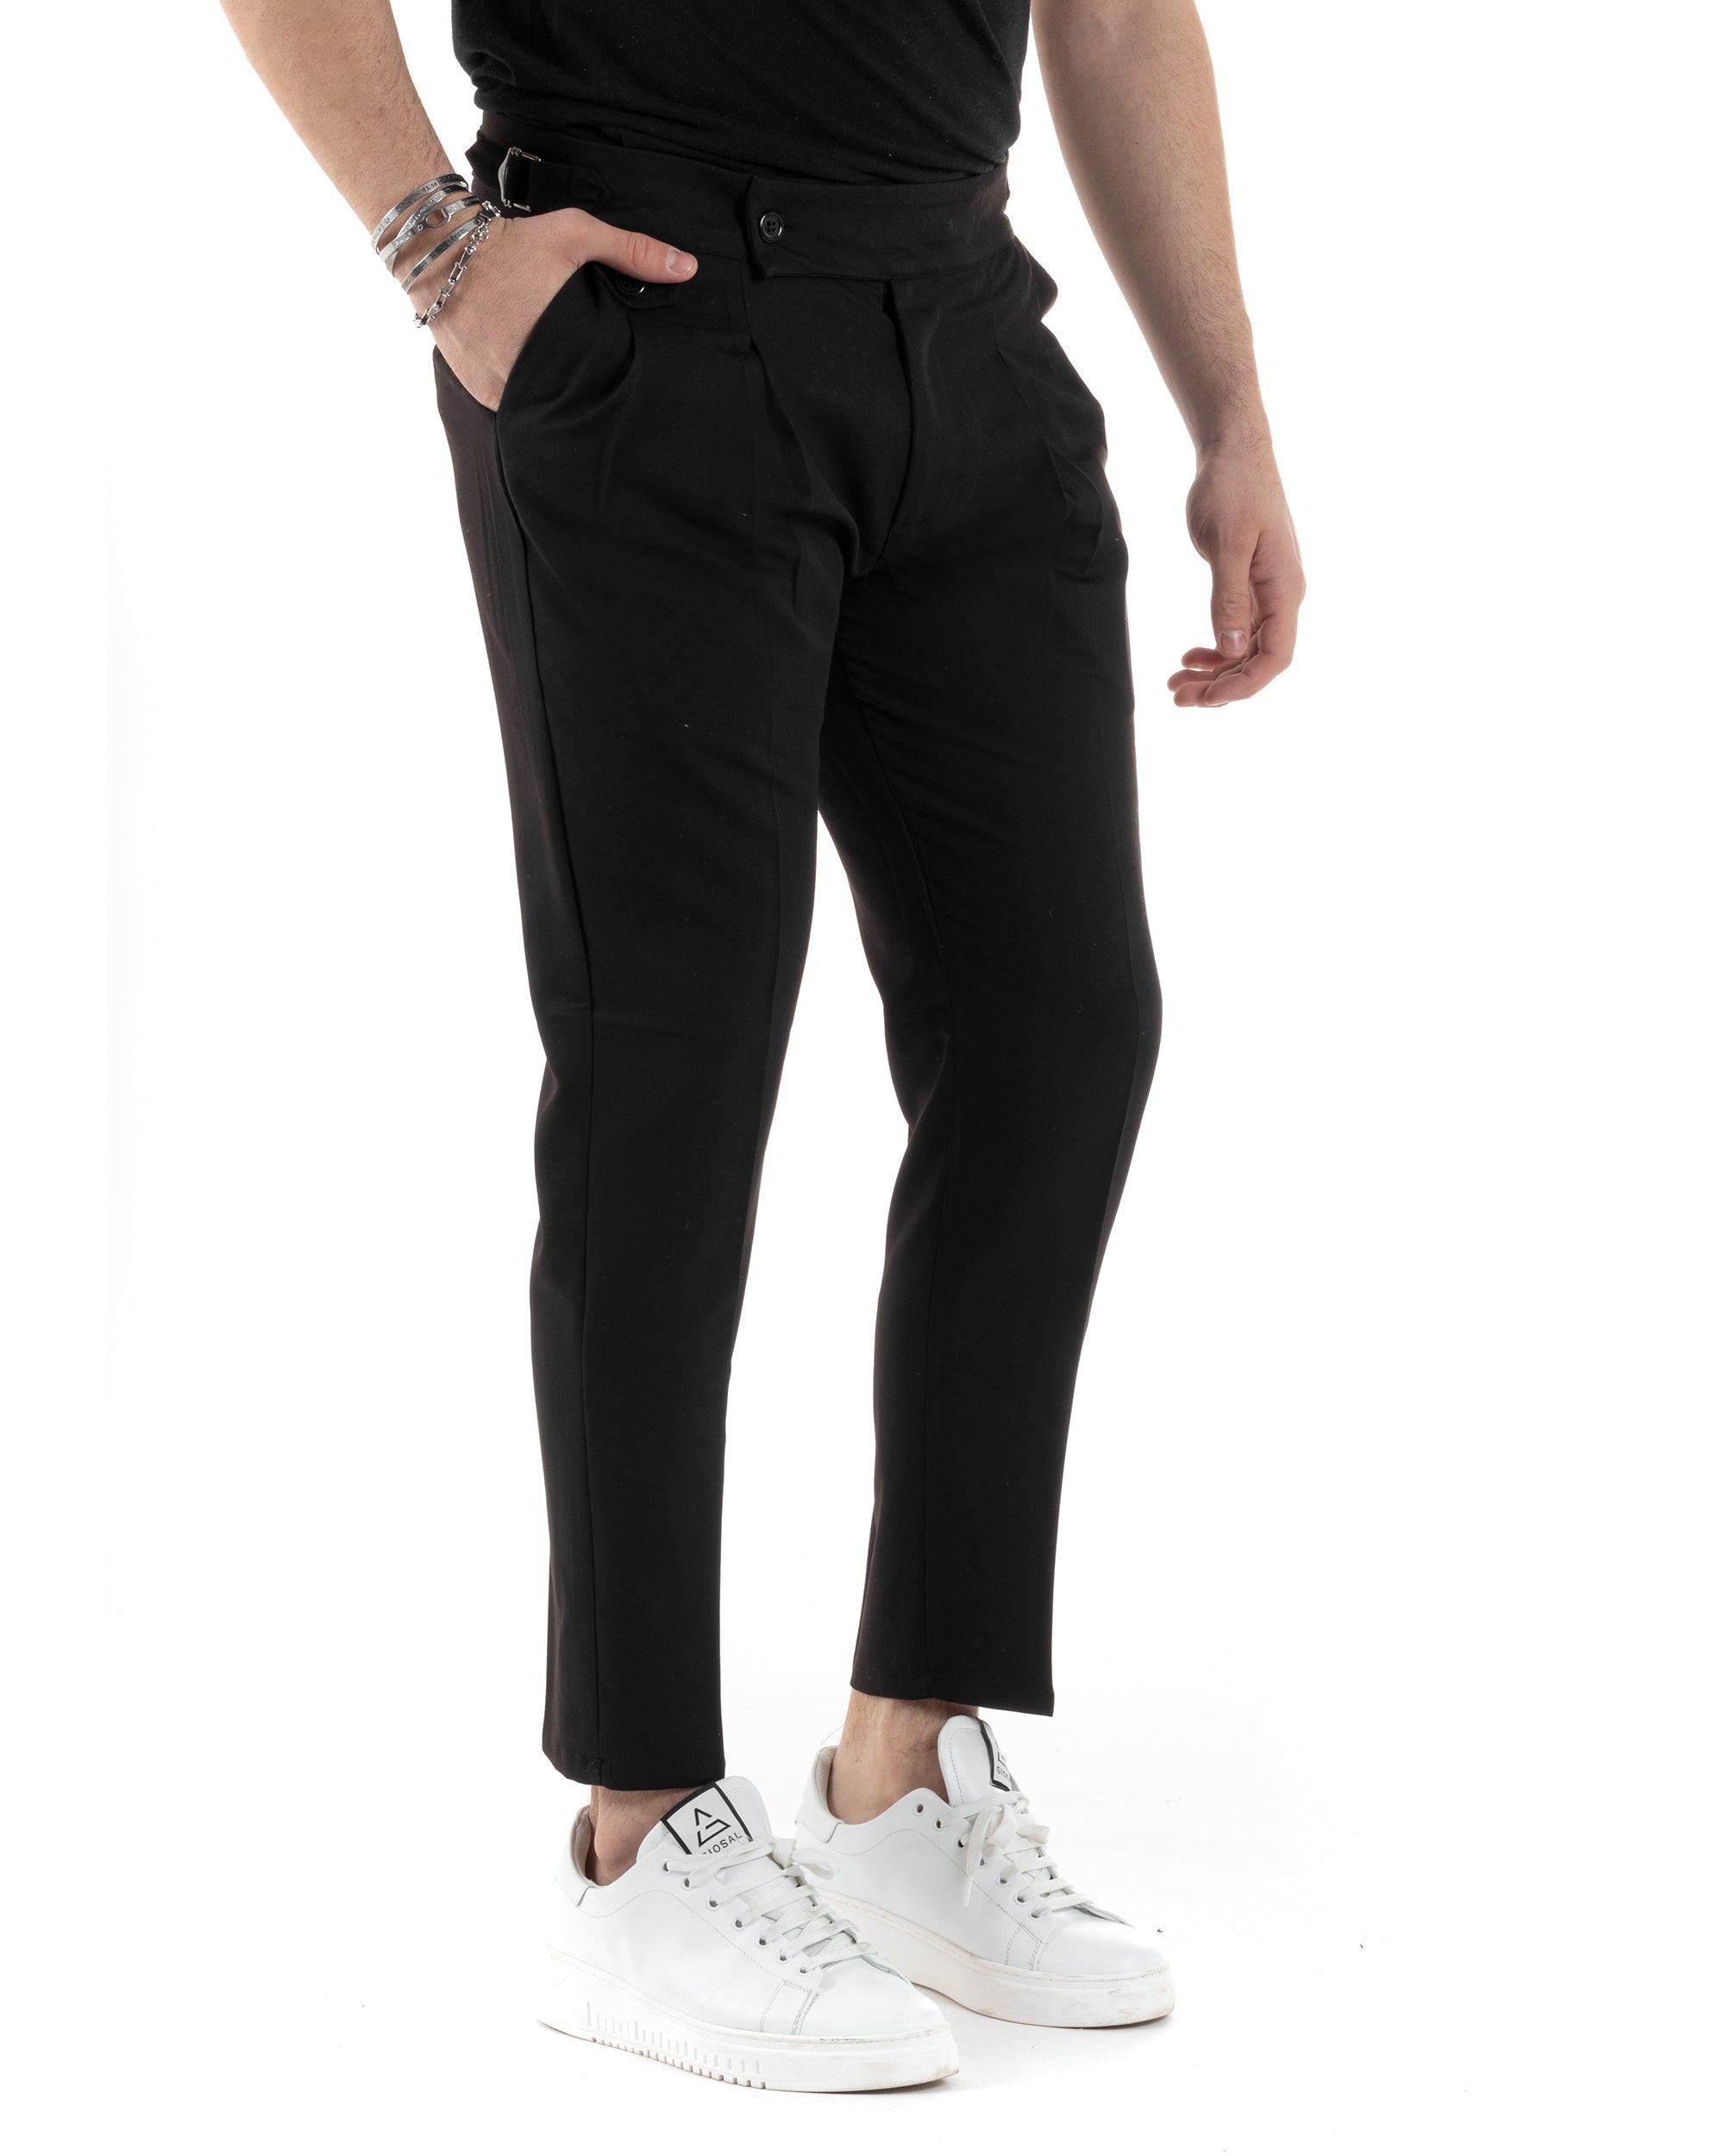 Pantaloni Uomo Tasca America Vita Alta Classico Pinces Abbottonatura Allungata Fibbia Casual Nero GIOSAL-P6042A